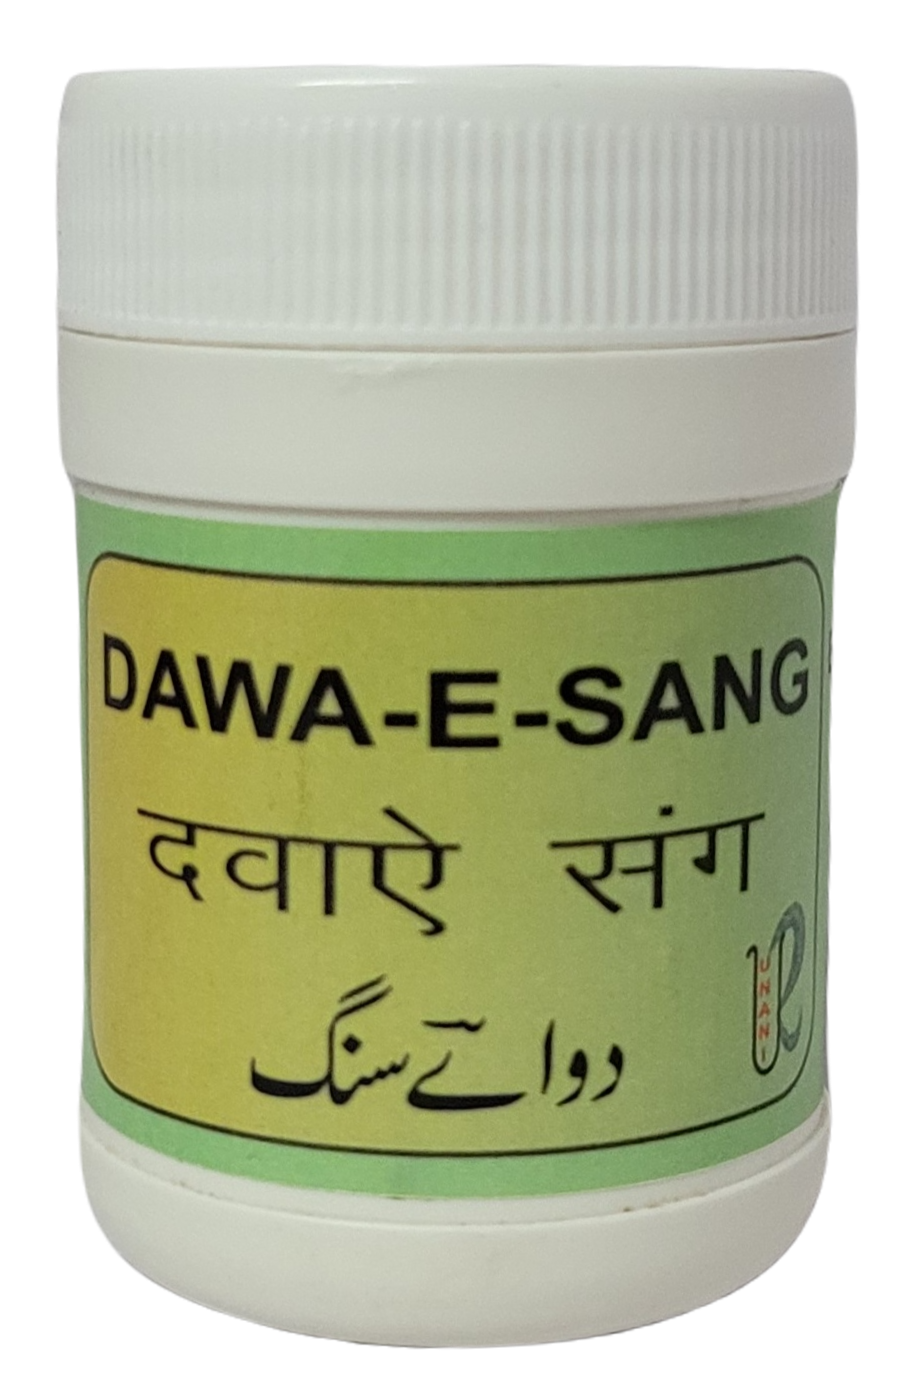 Dawa-e-sang